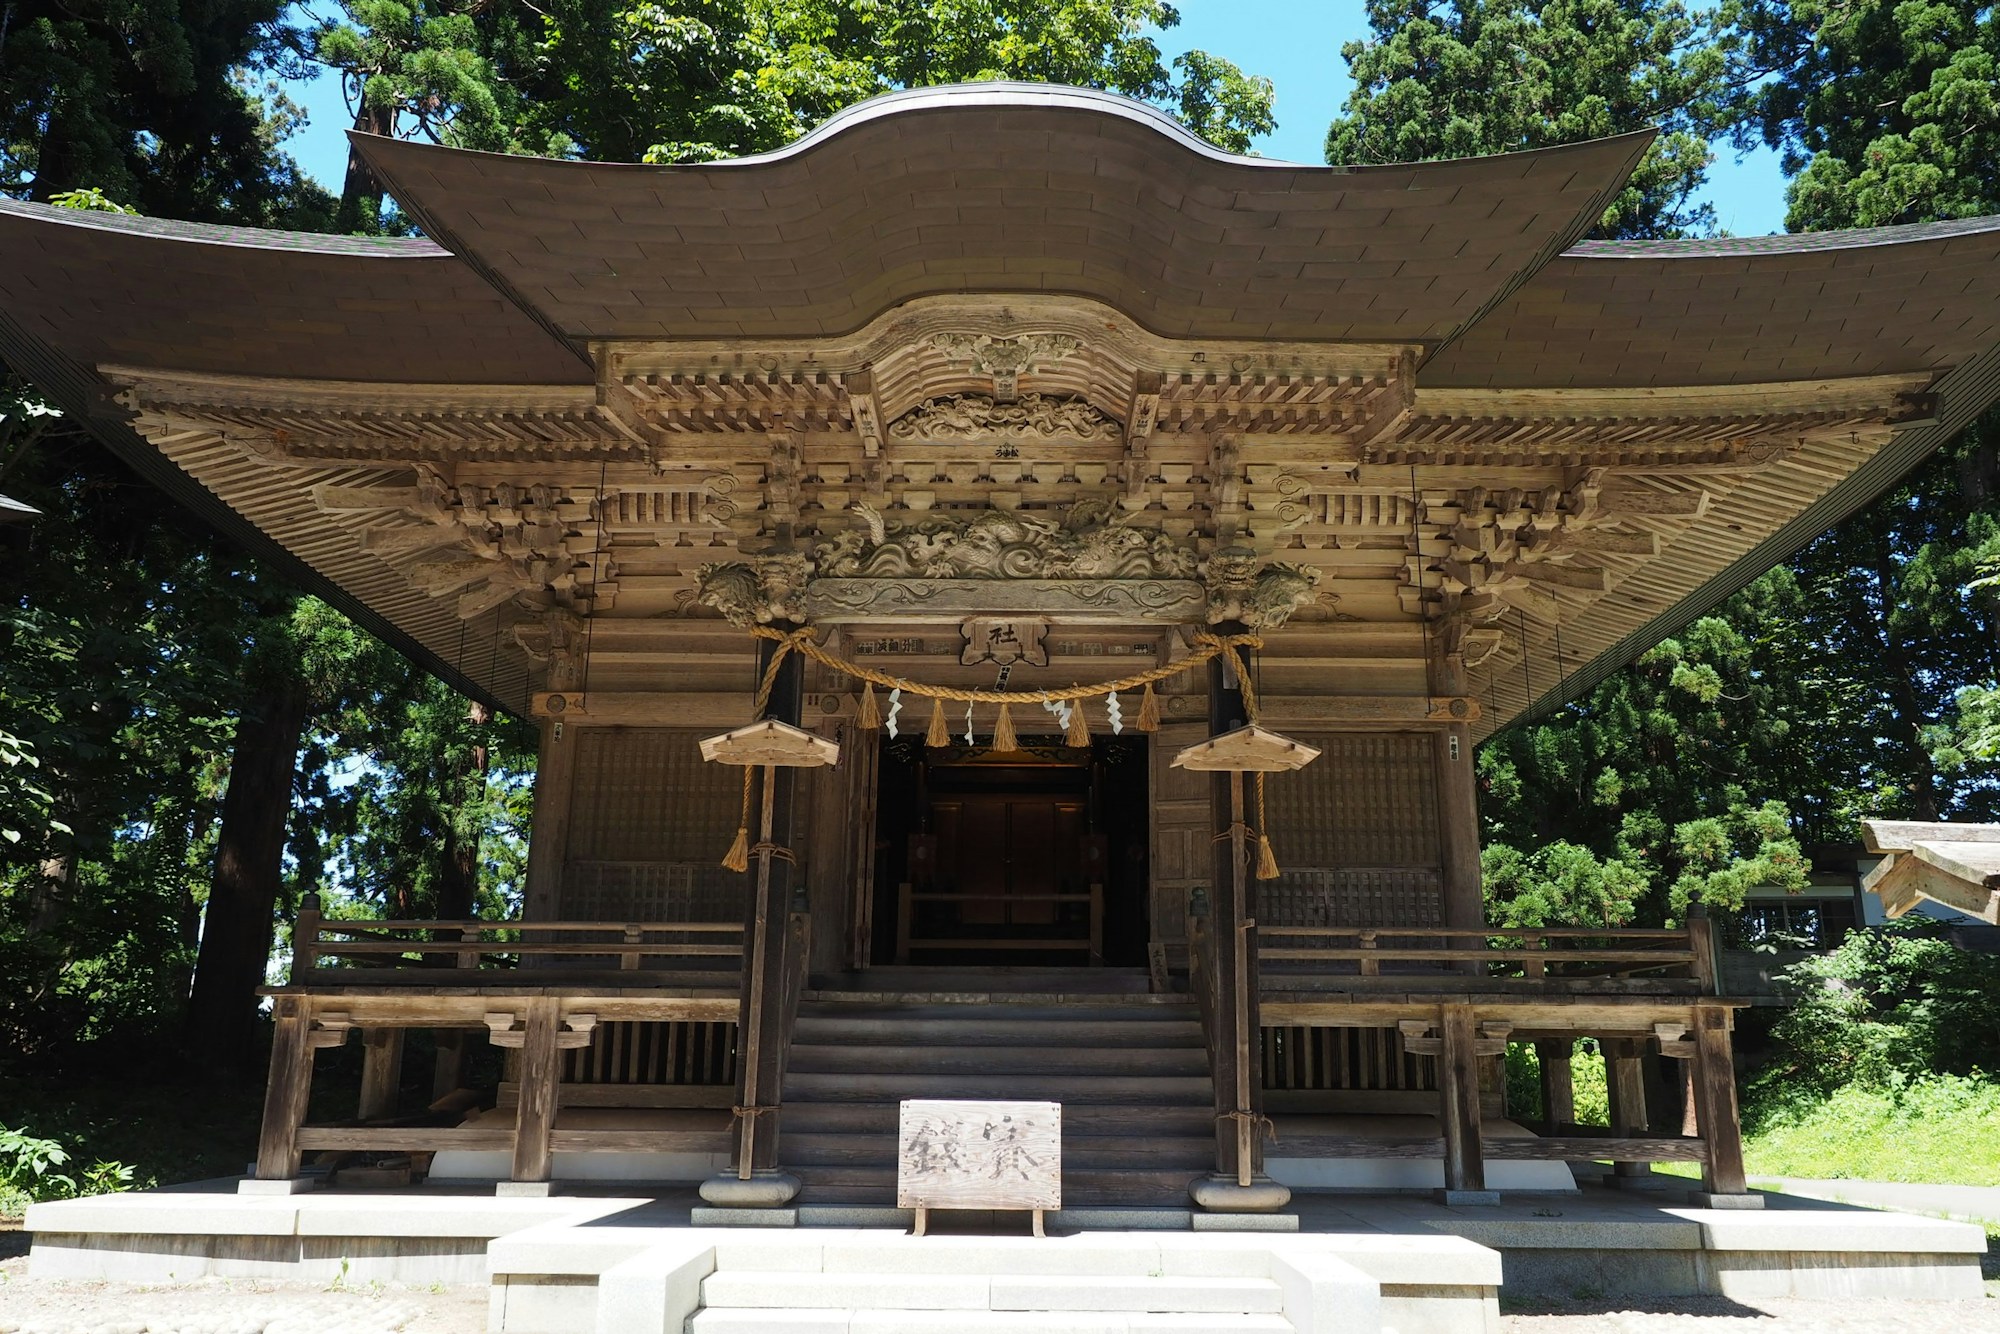 Tsuruoka: Exploring Local Culture, History & Festivals